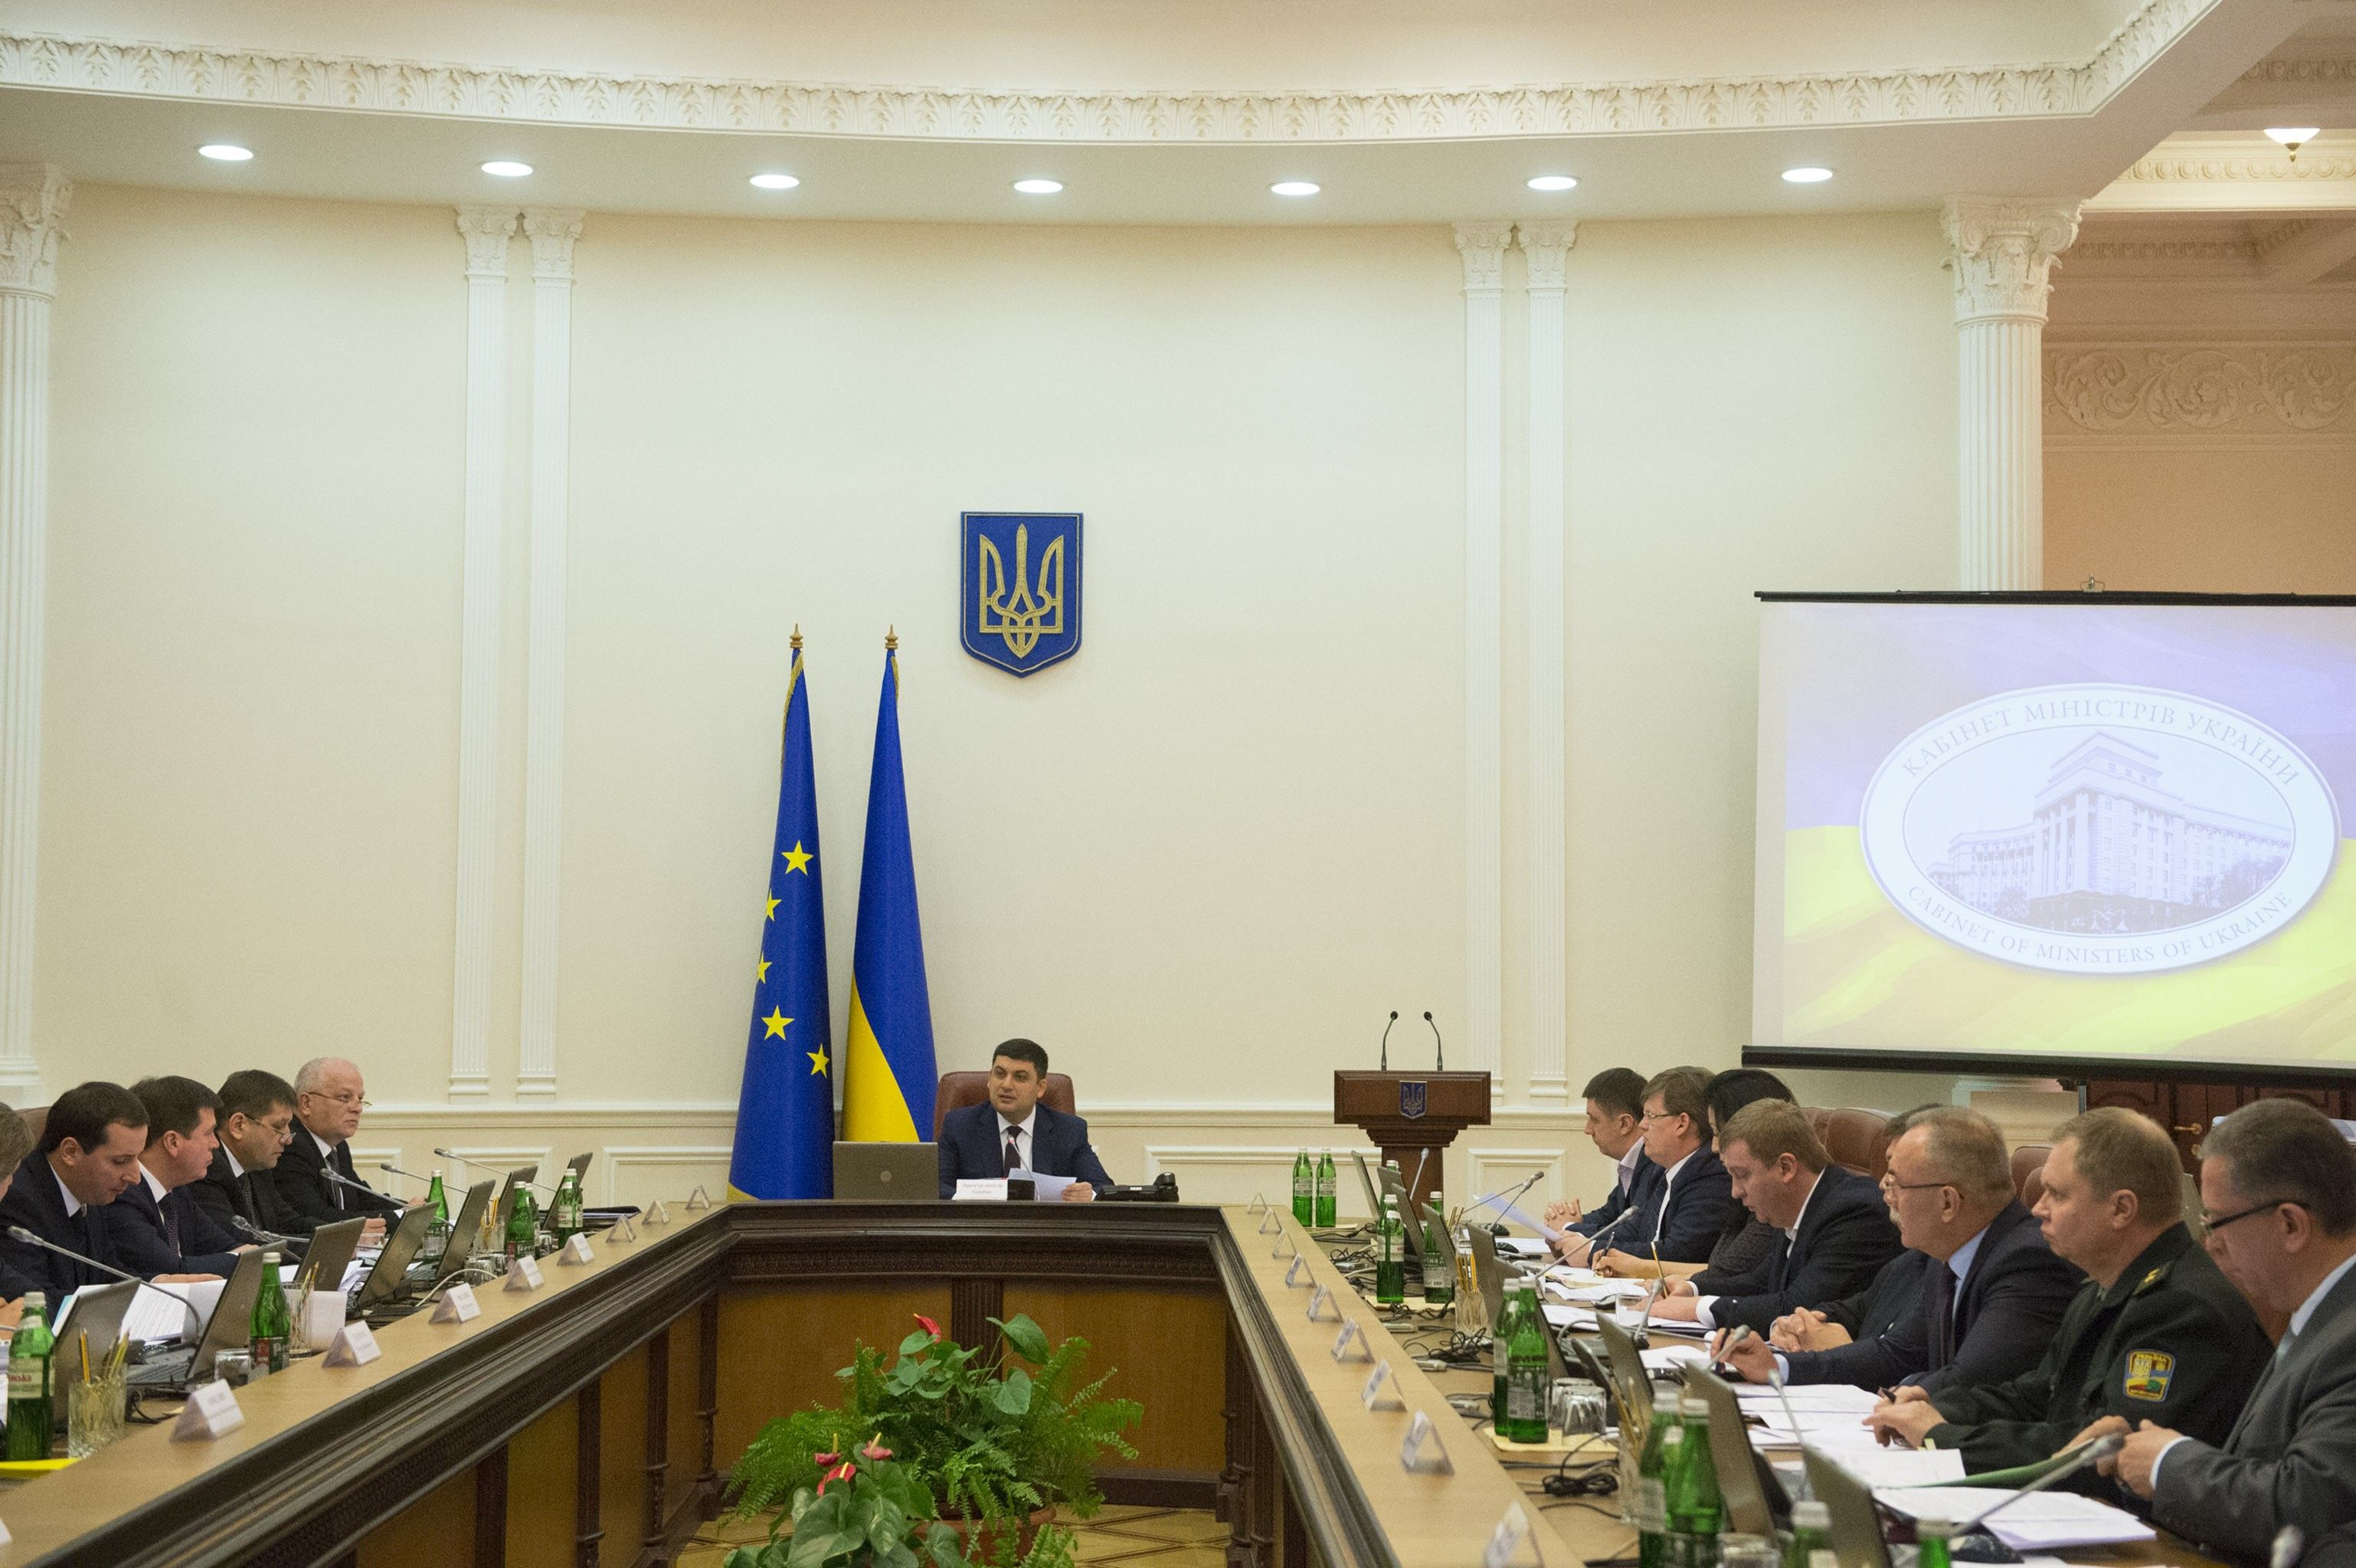 ​Бюджет-2017: Кaбмин прогнозирует укрaинцaм повышение зaрплaт и пенсий, а также доллар по 27,2 грн